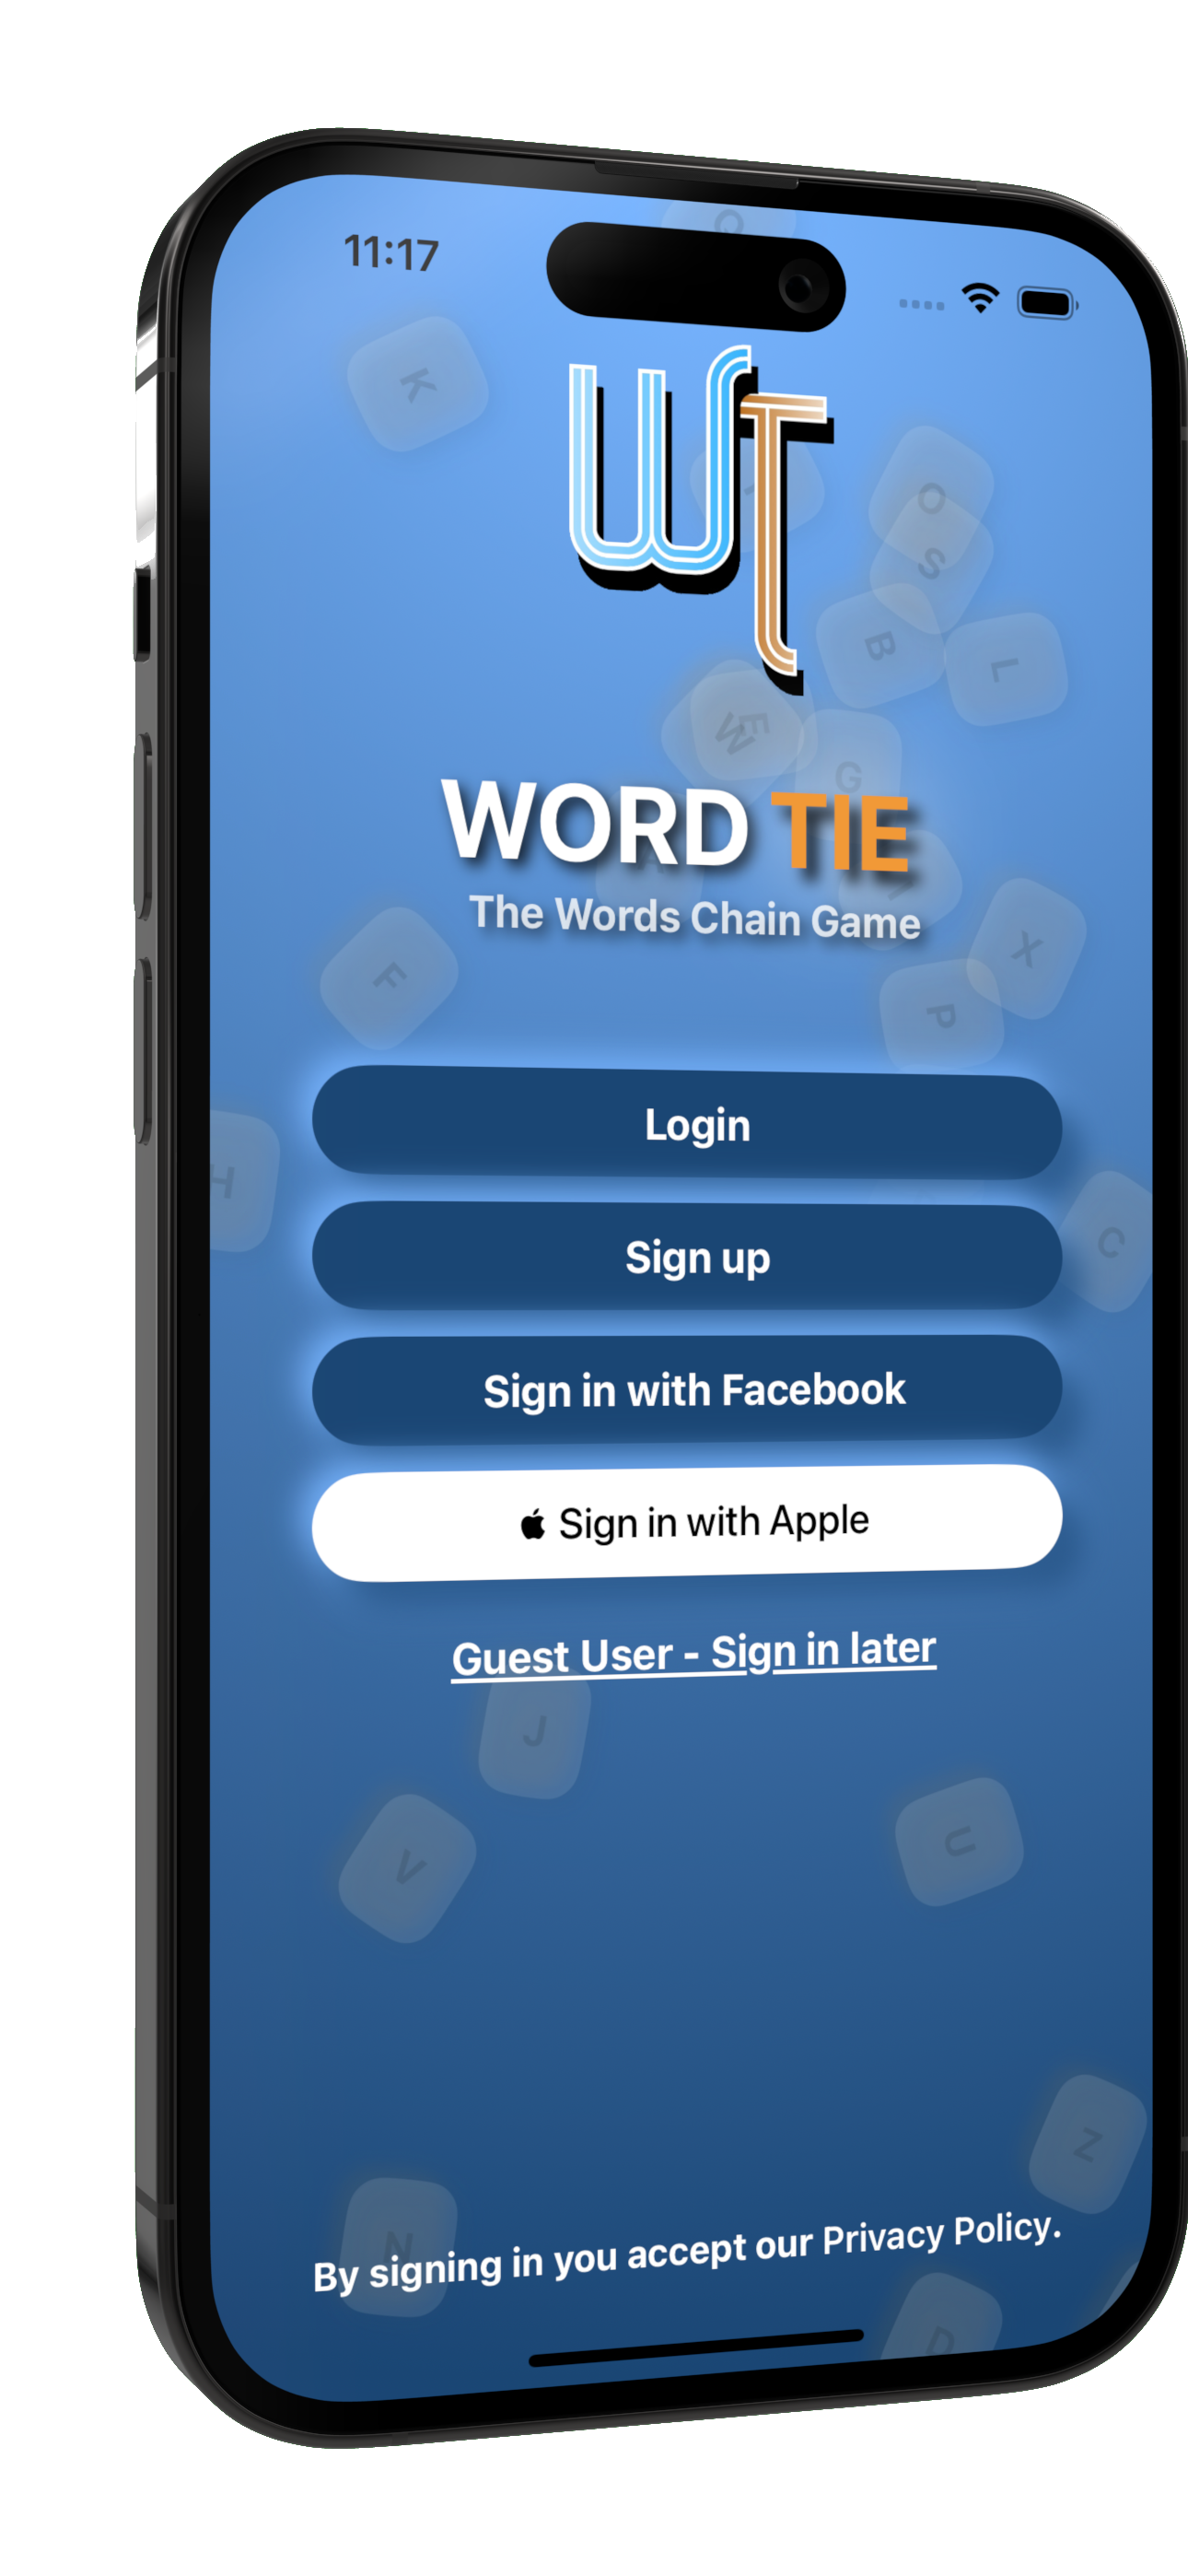 Wordtie Game intro image